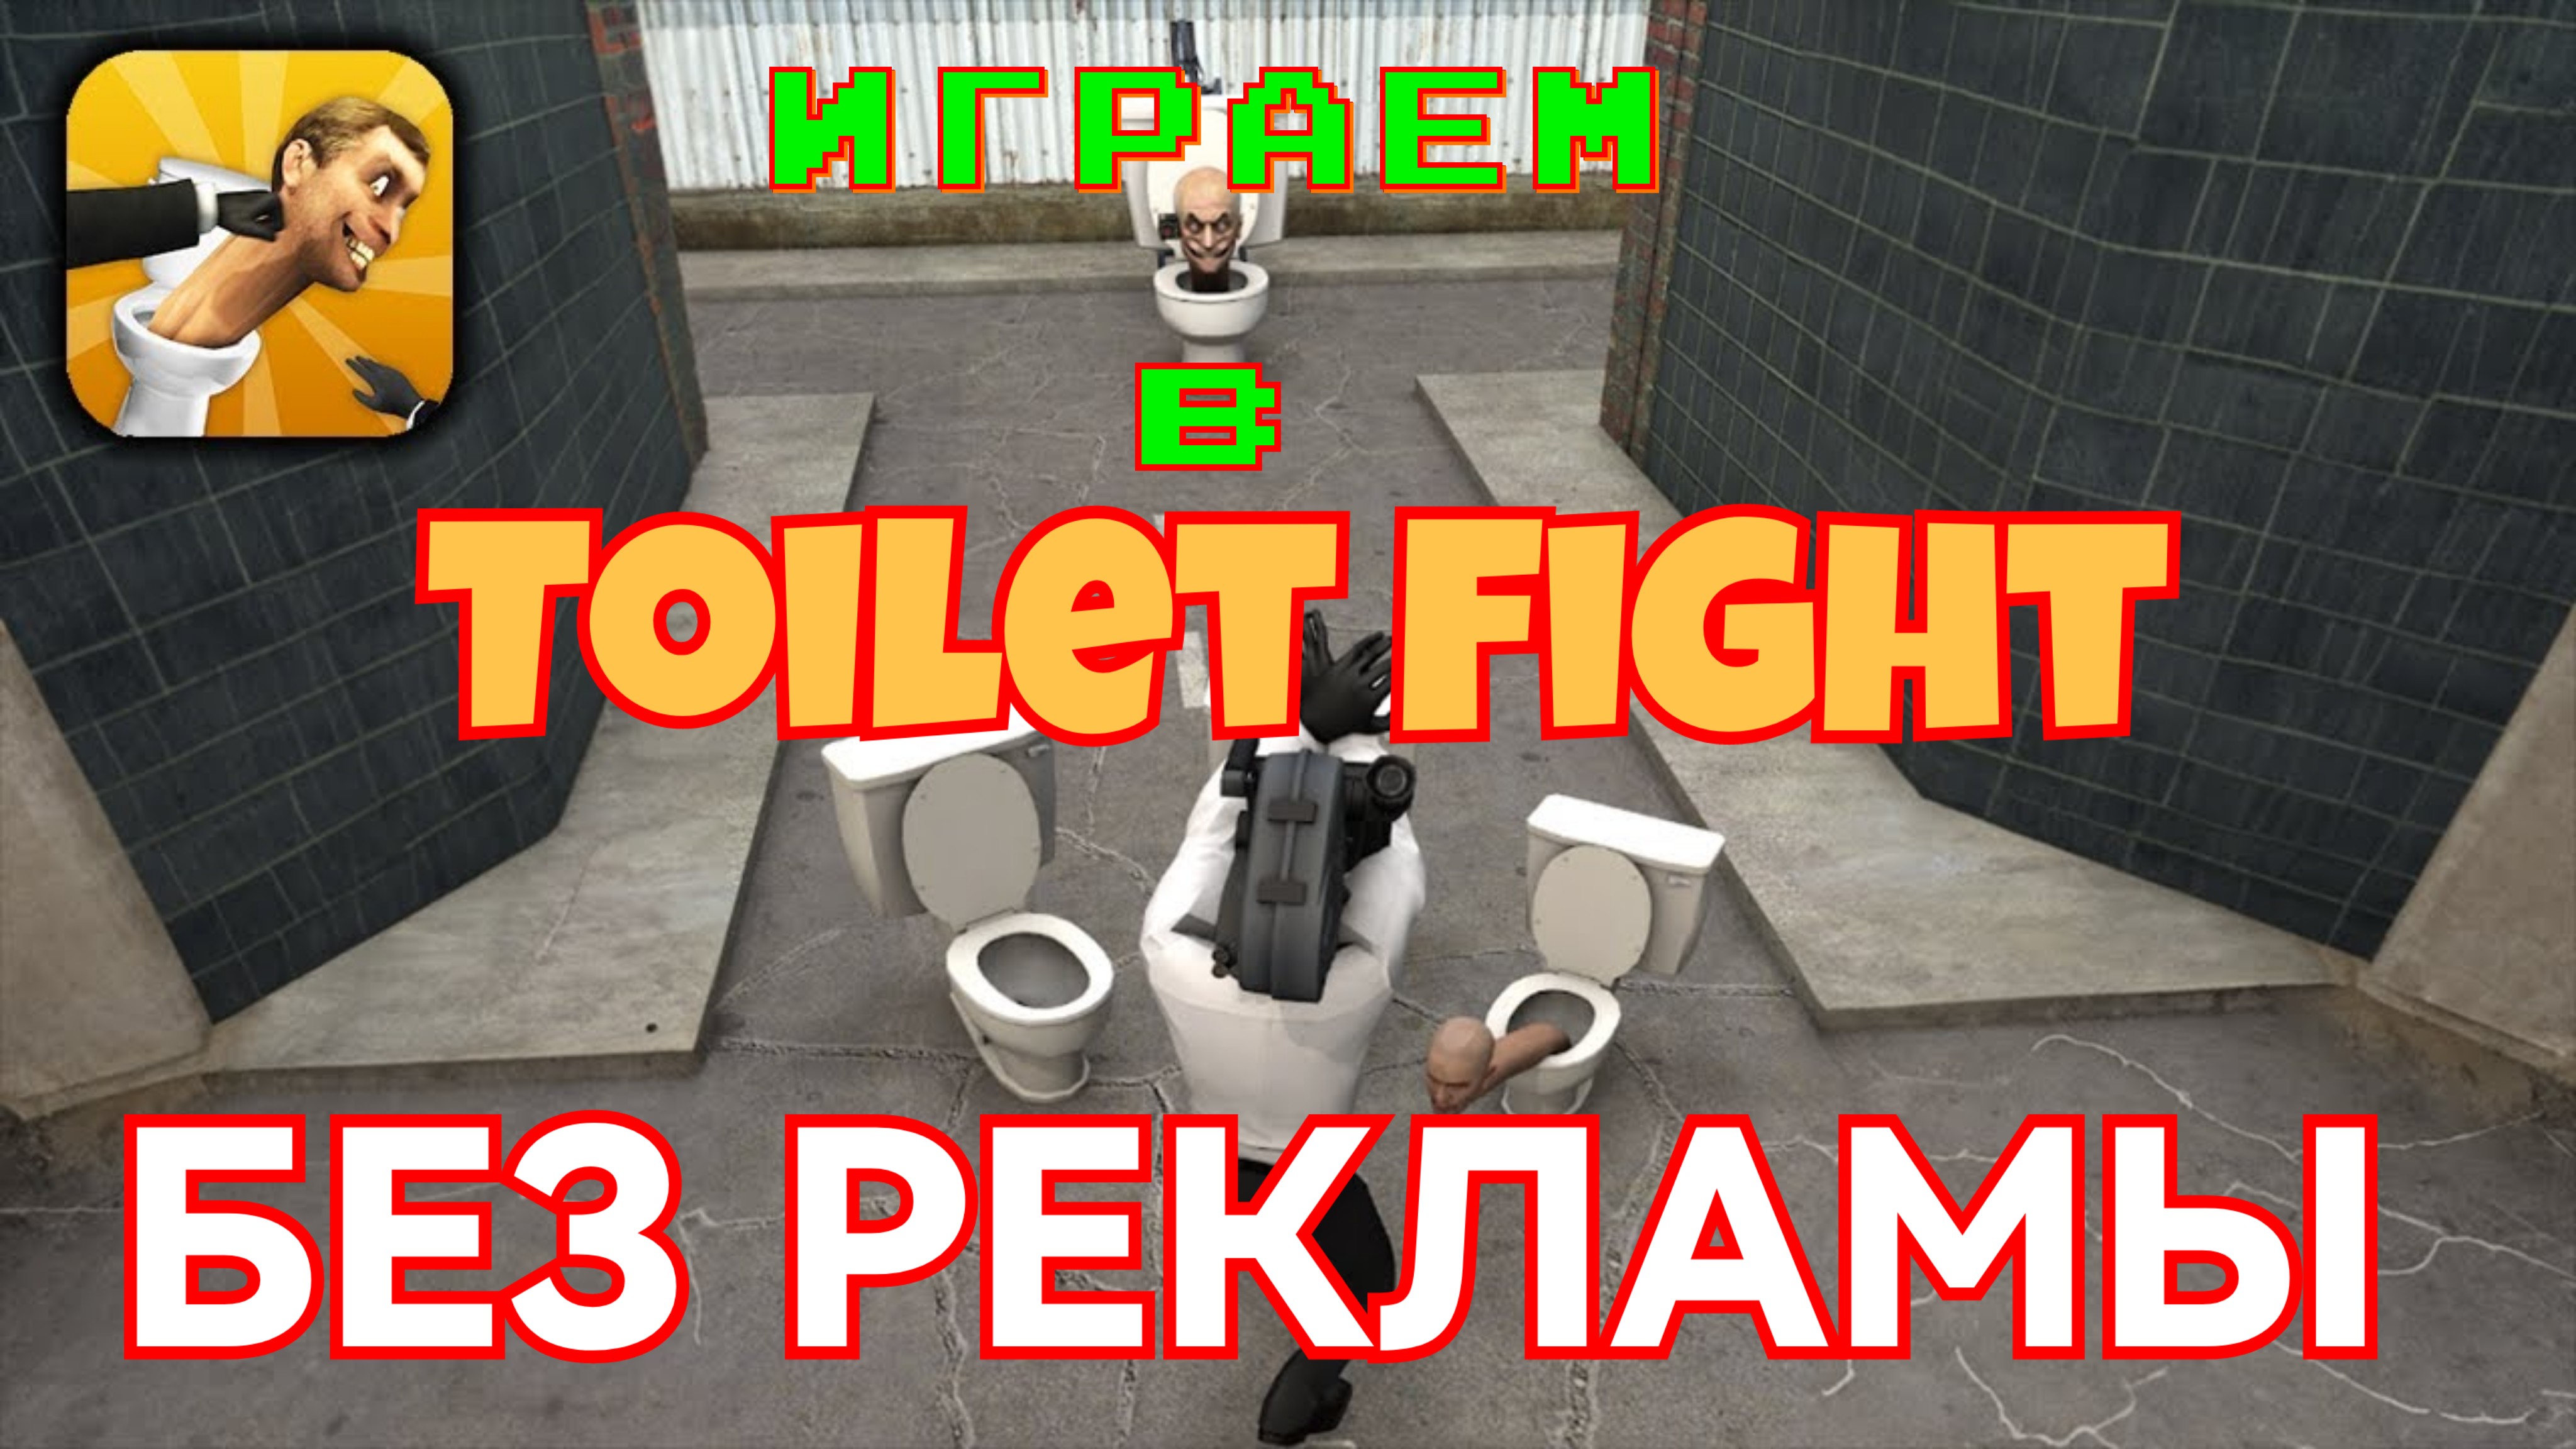 Туалет fight 0. Игра туалет файт открытый мир. Взломанный туалет Fight. Промокоды в игру Toilet Fight.